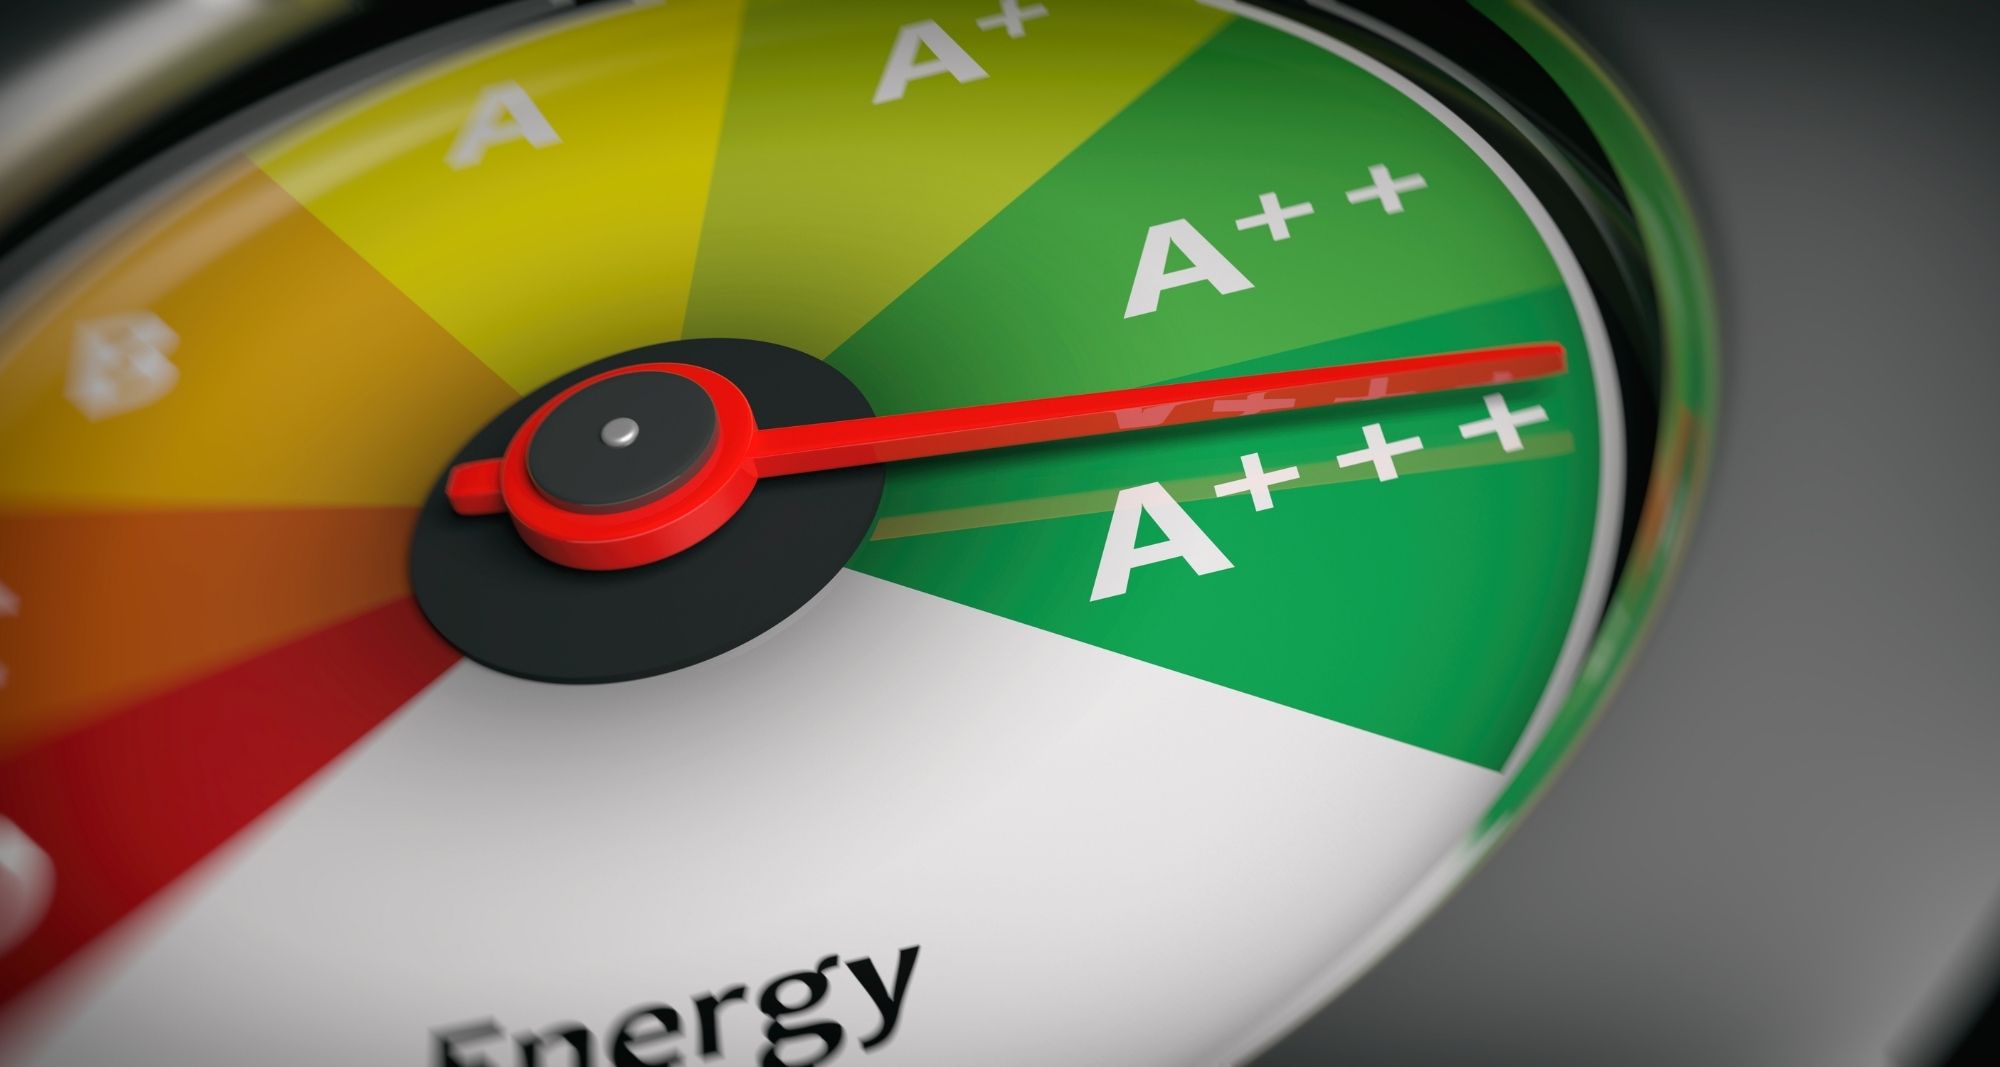 Efficacité énergétique, TCO : quels indicateurs suivre pour gérer efficacement sa flotte automobile ?